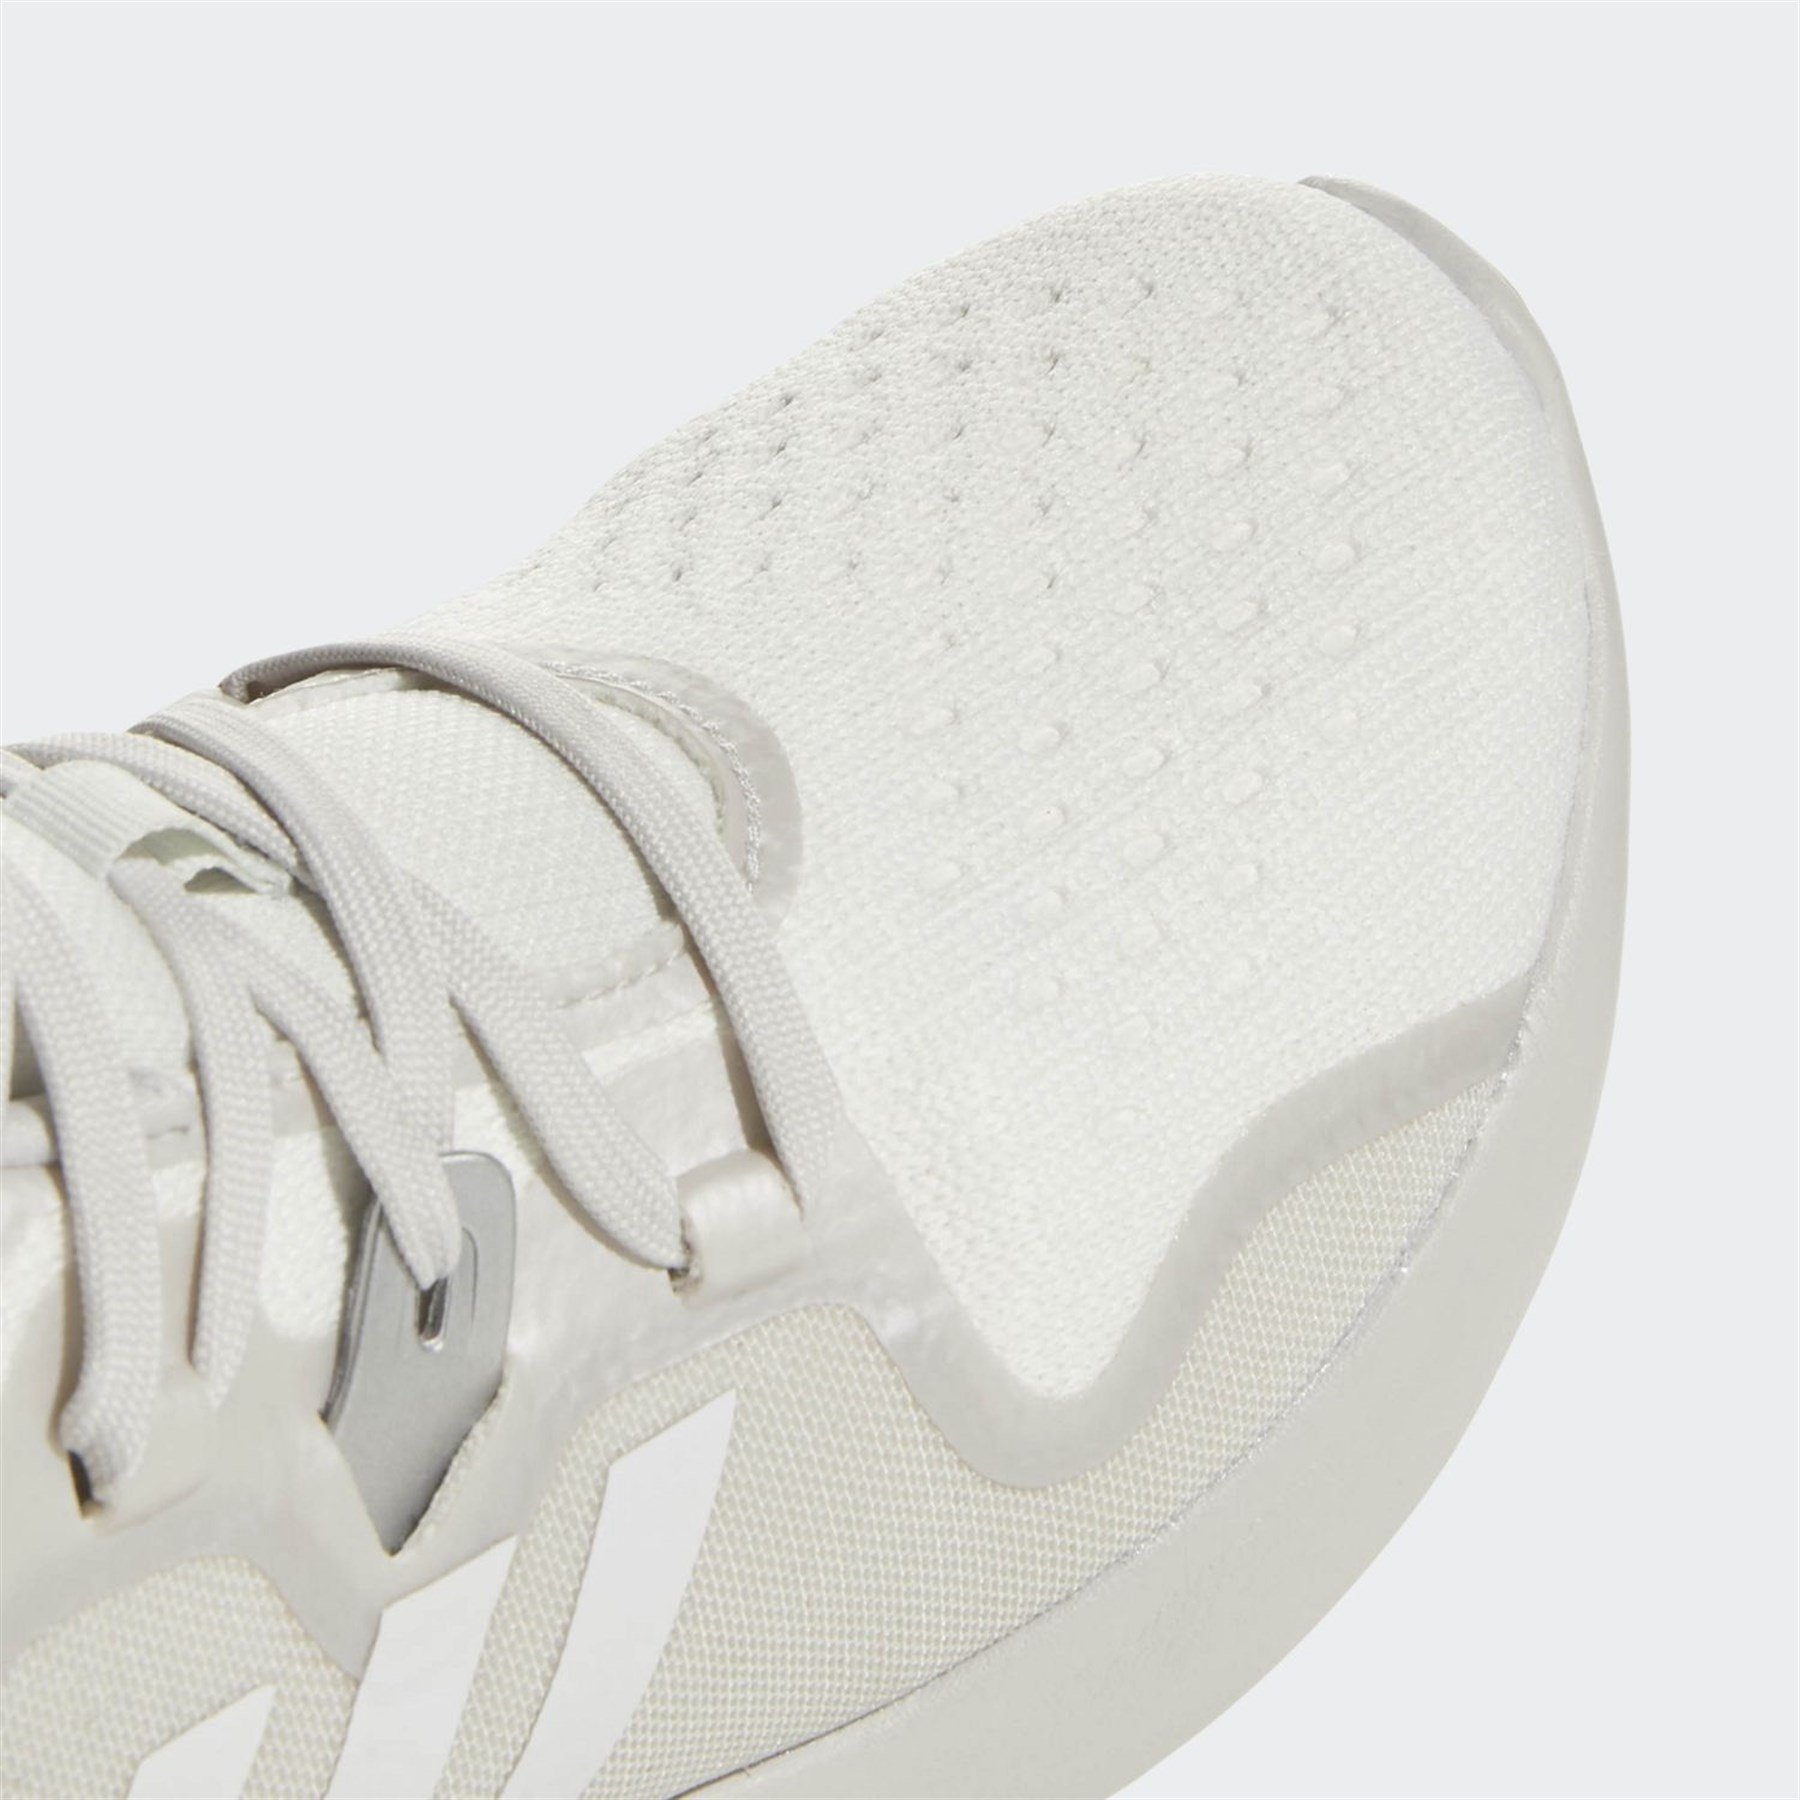 Adidas Kadın Koşu - Yürüyüş Ayakkabı Ac8116 Edgebounce W